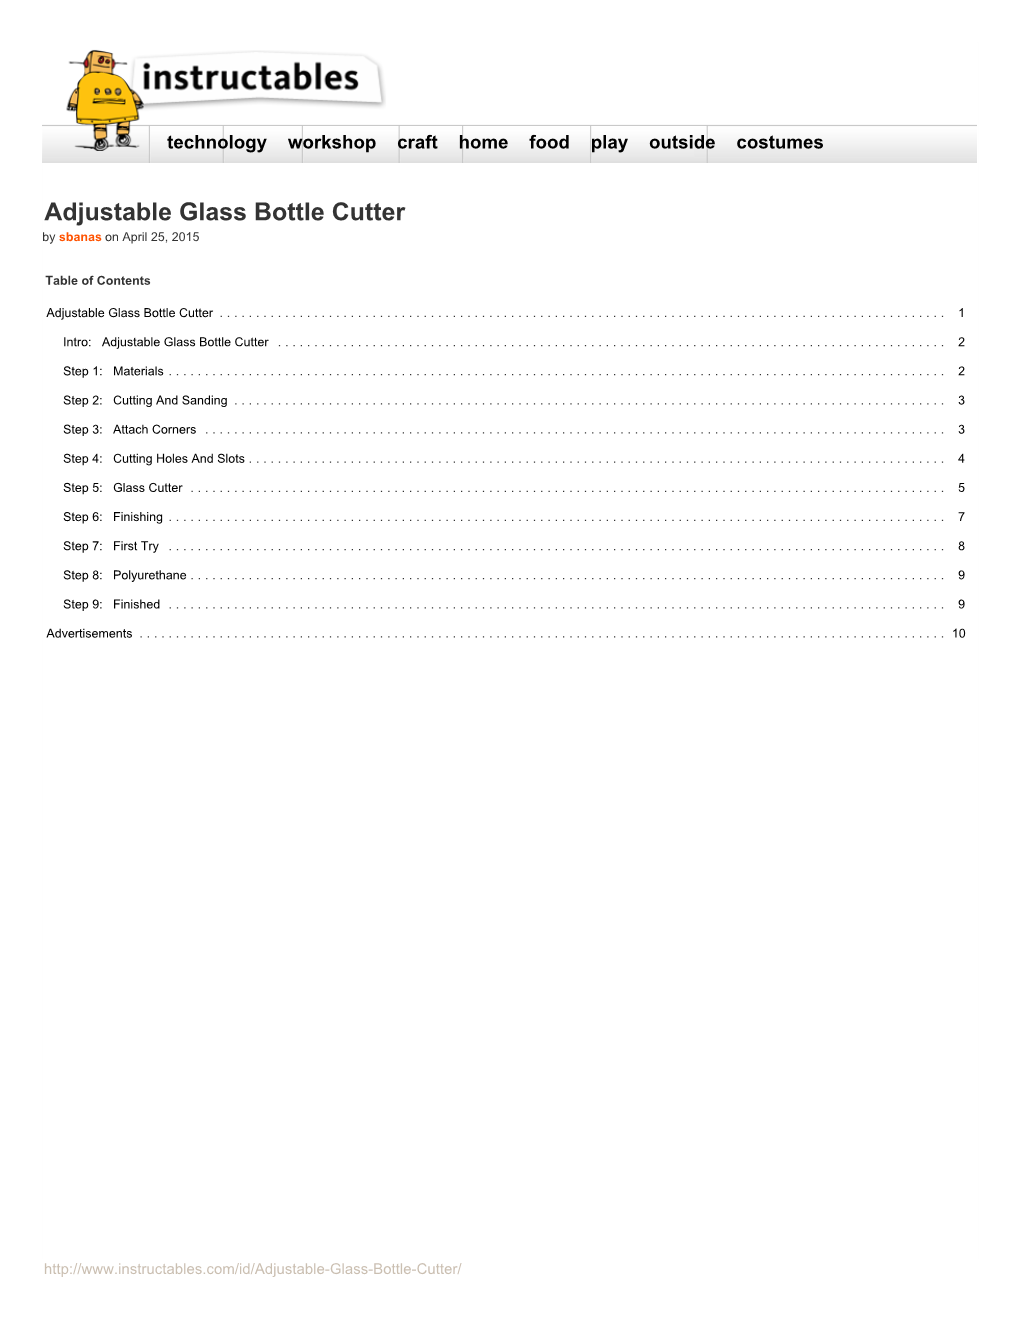 Adjustable Glass Bottle Cutter by Sbanas on April 25, 2015